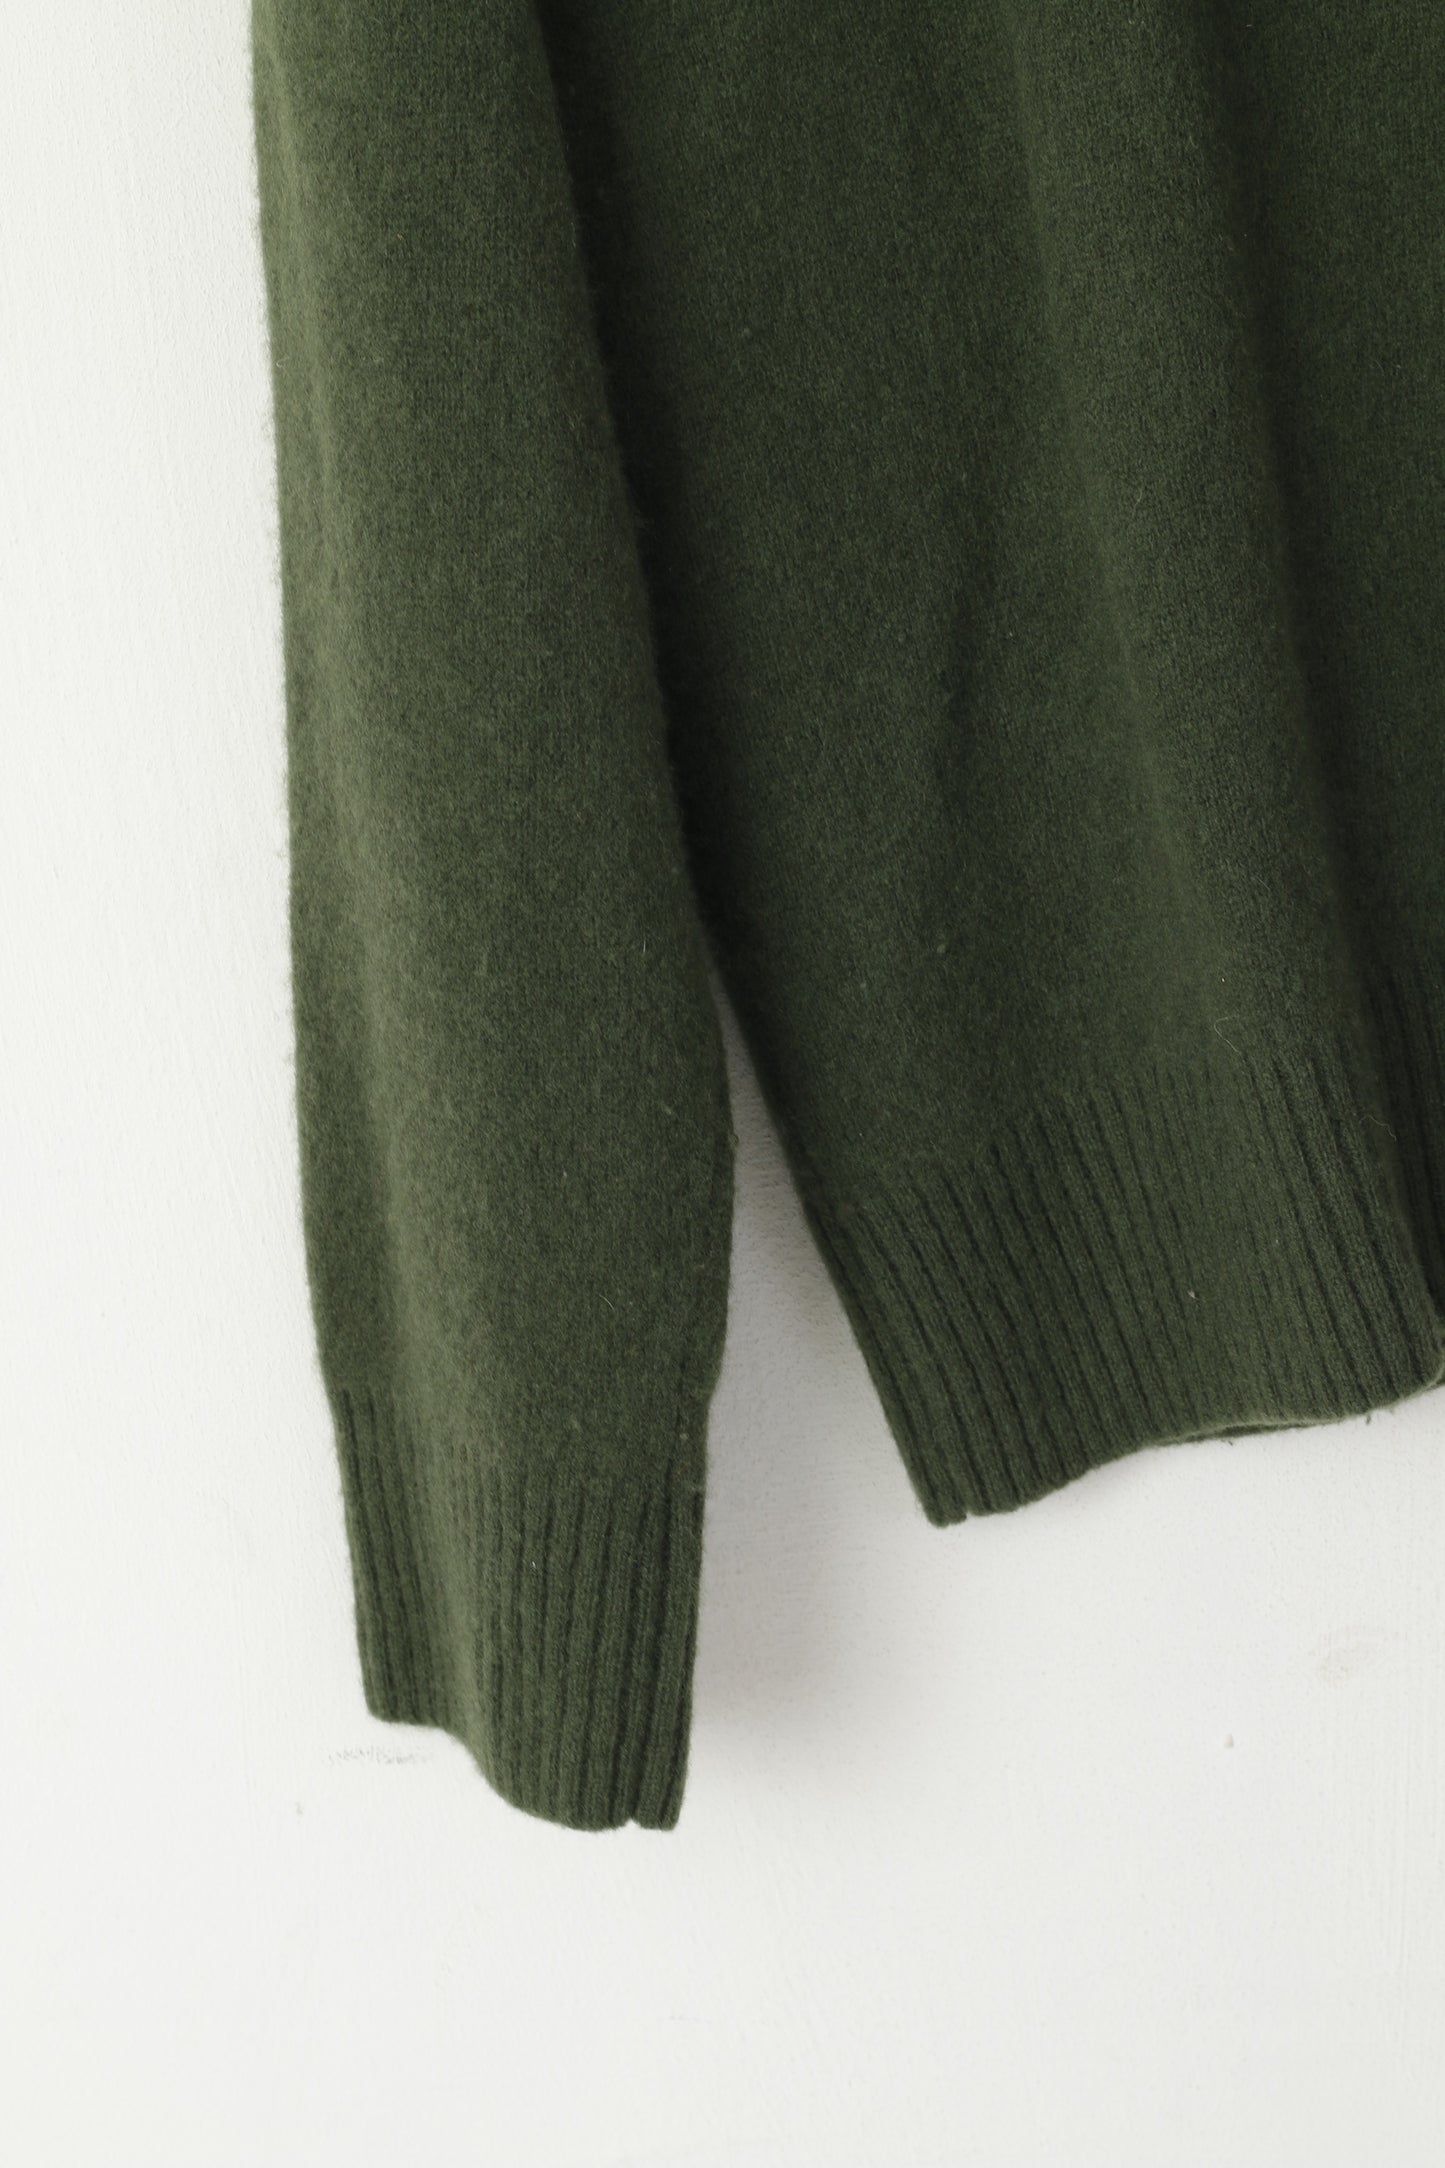 Maglione originale Penguin da uomo 2XL (M) verde con scollo a V, top in lana al 100%.